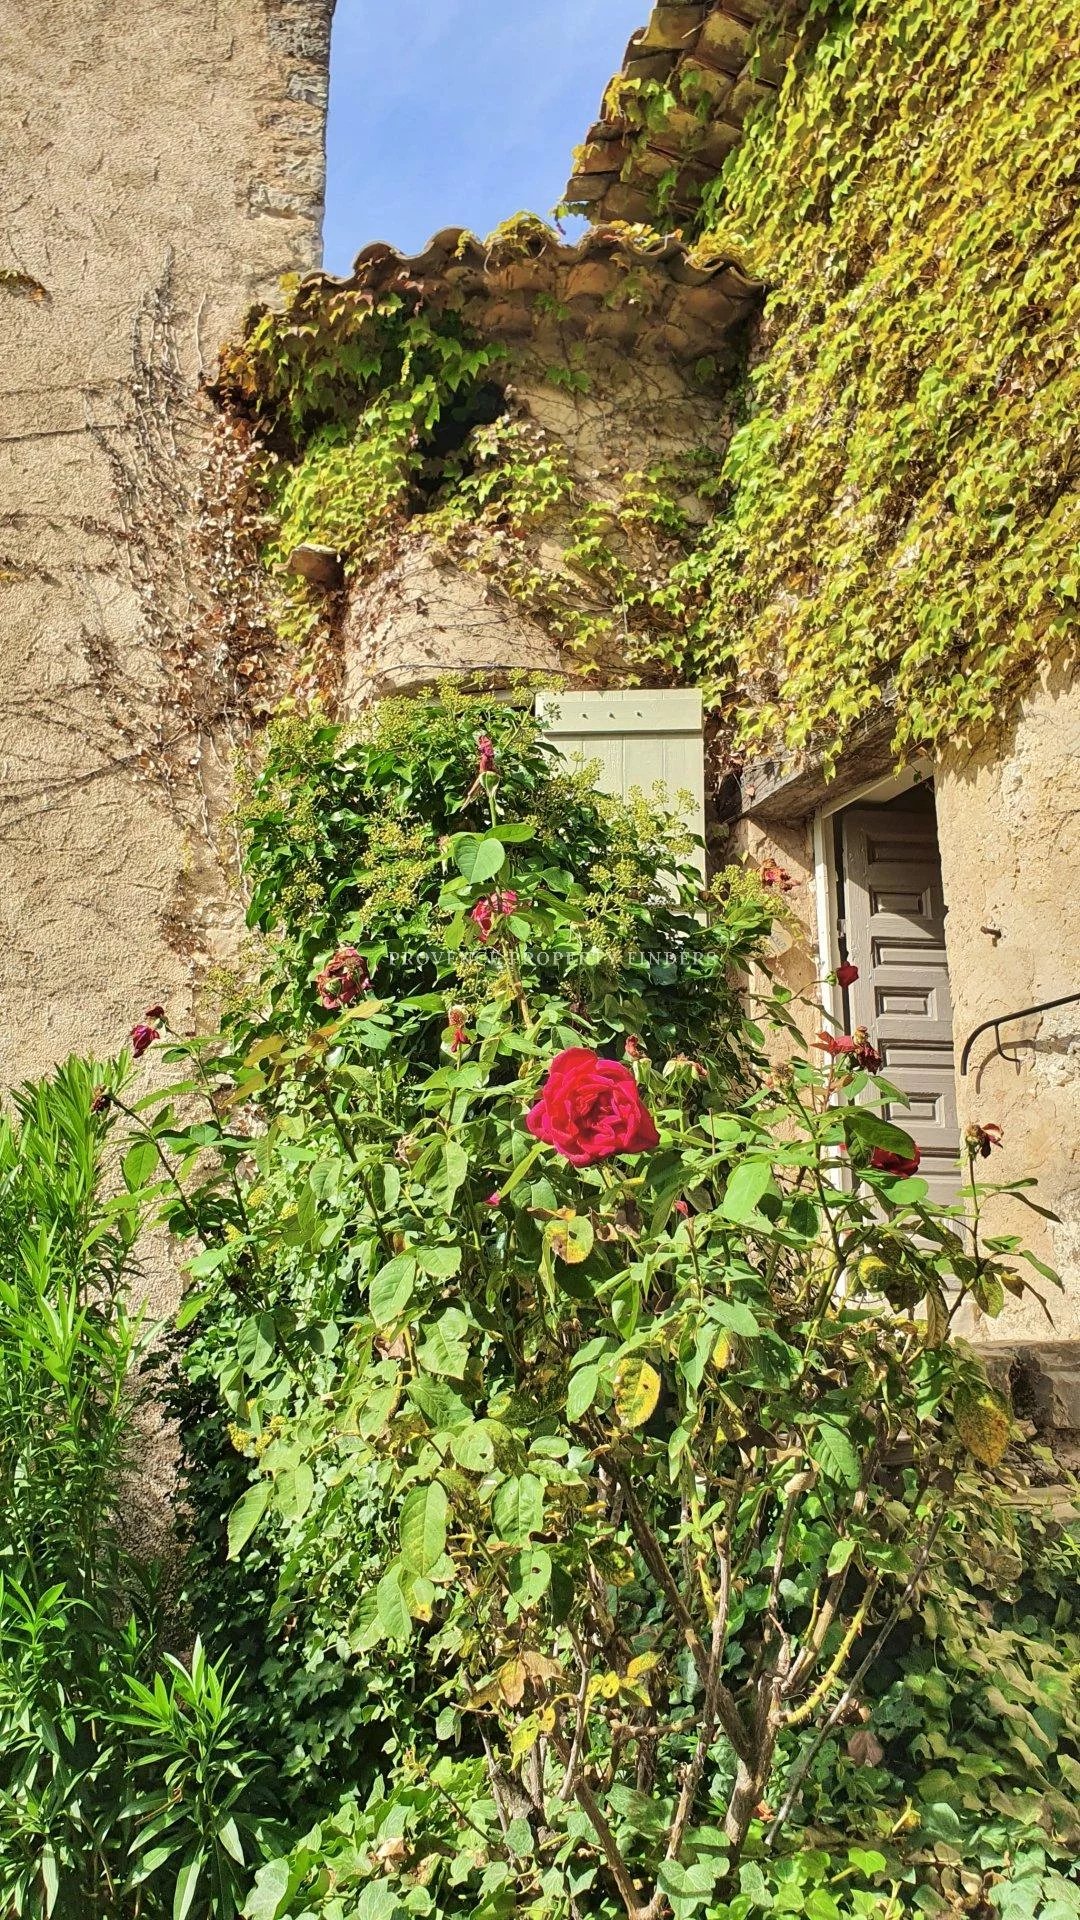 B&B. Gerenoveerde oude Provençaalse boerderij, 7 slaapkamers.